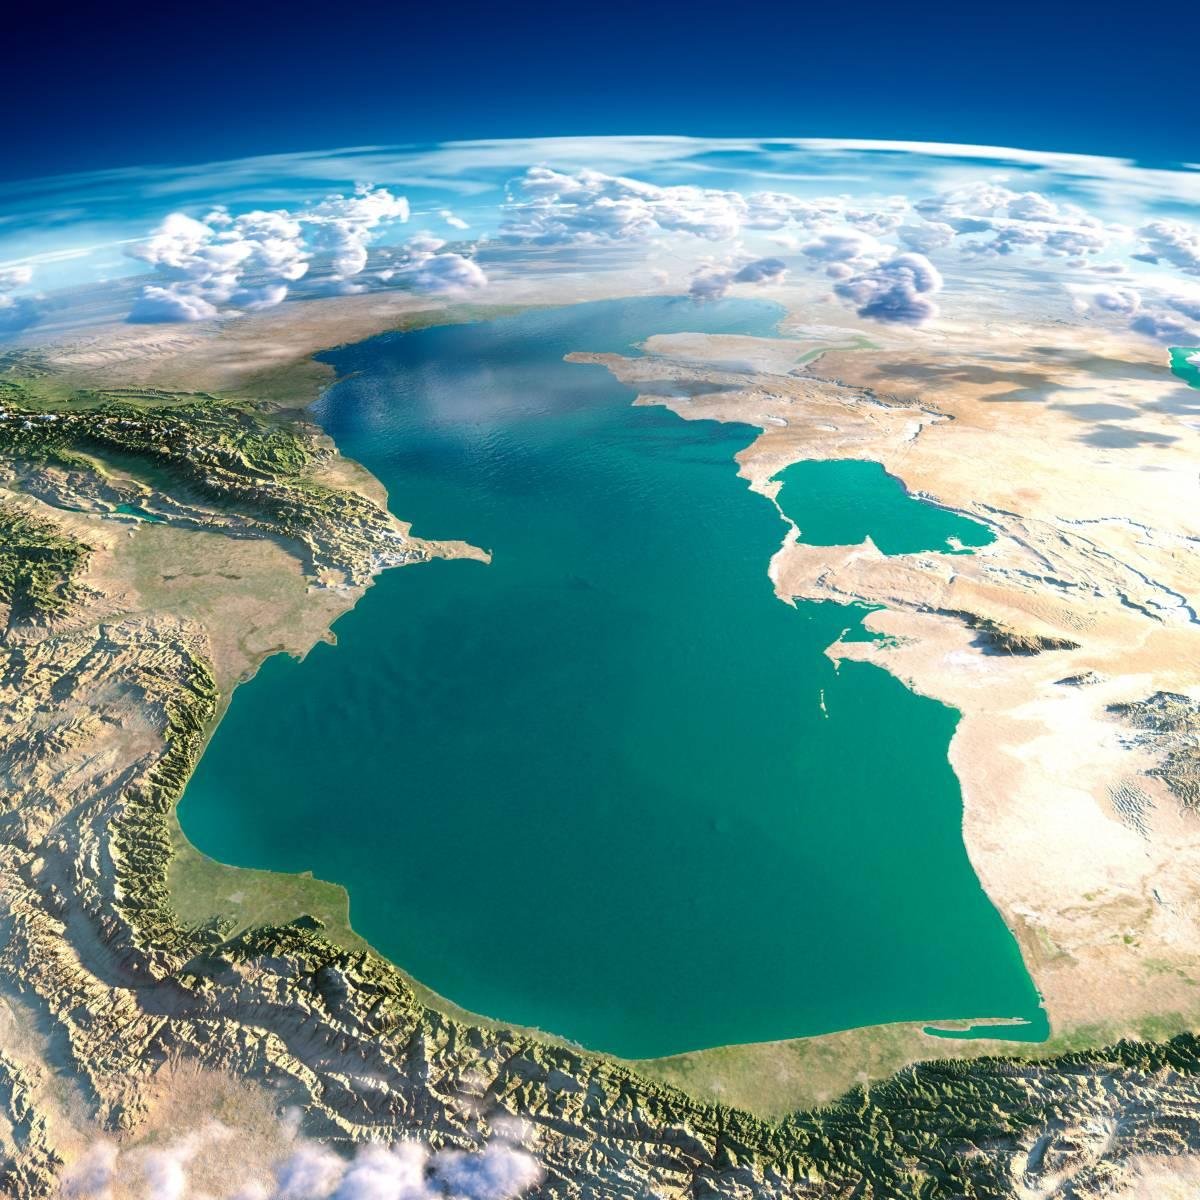 Каспийское озеро